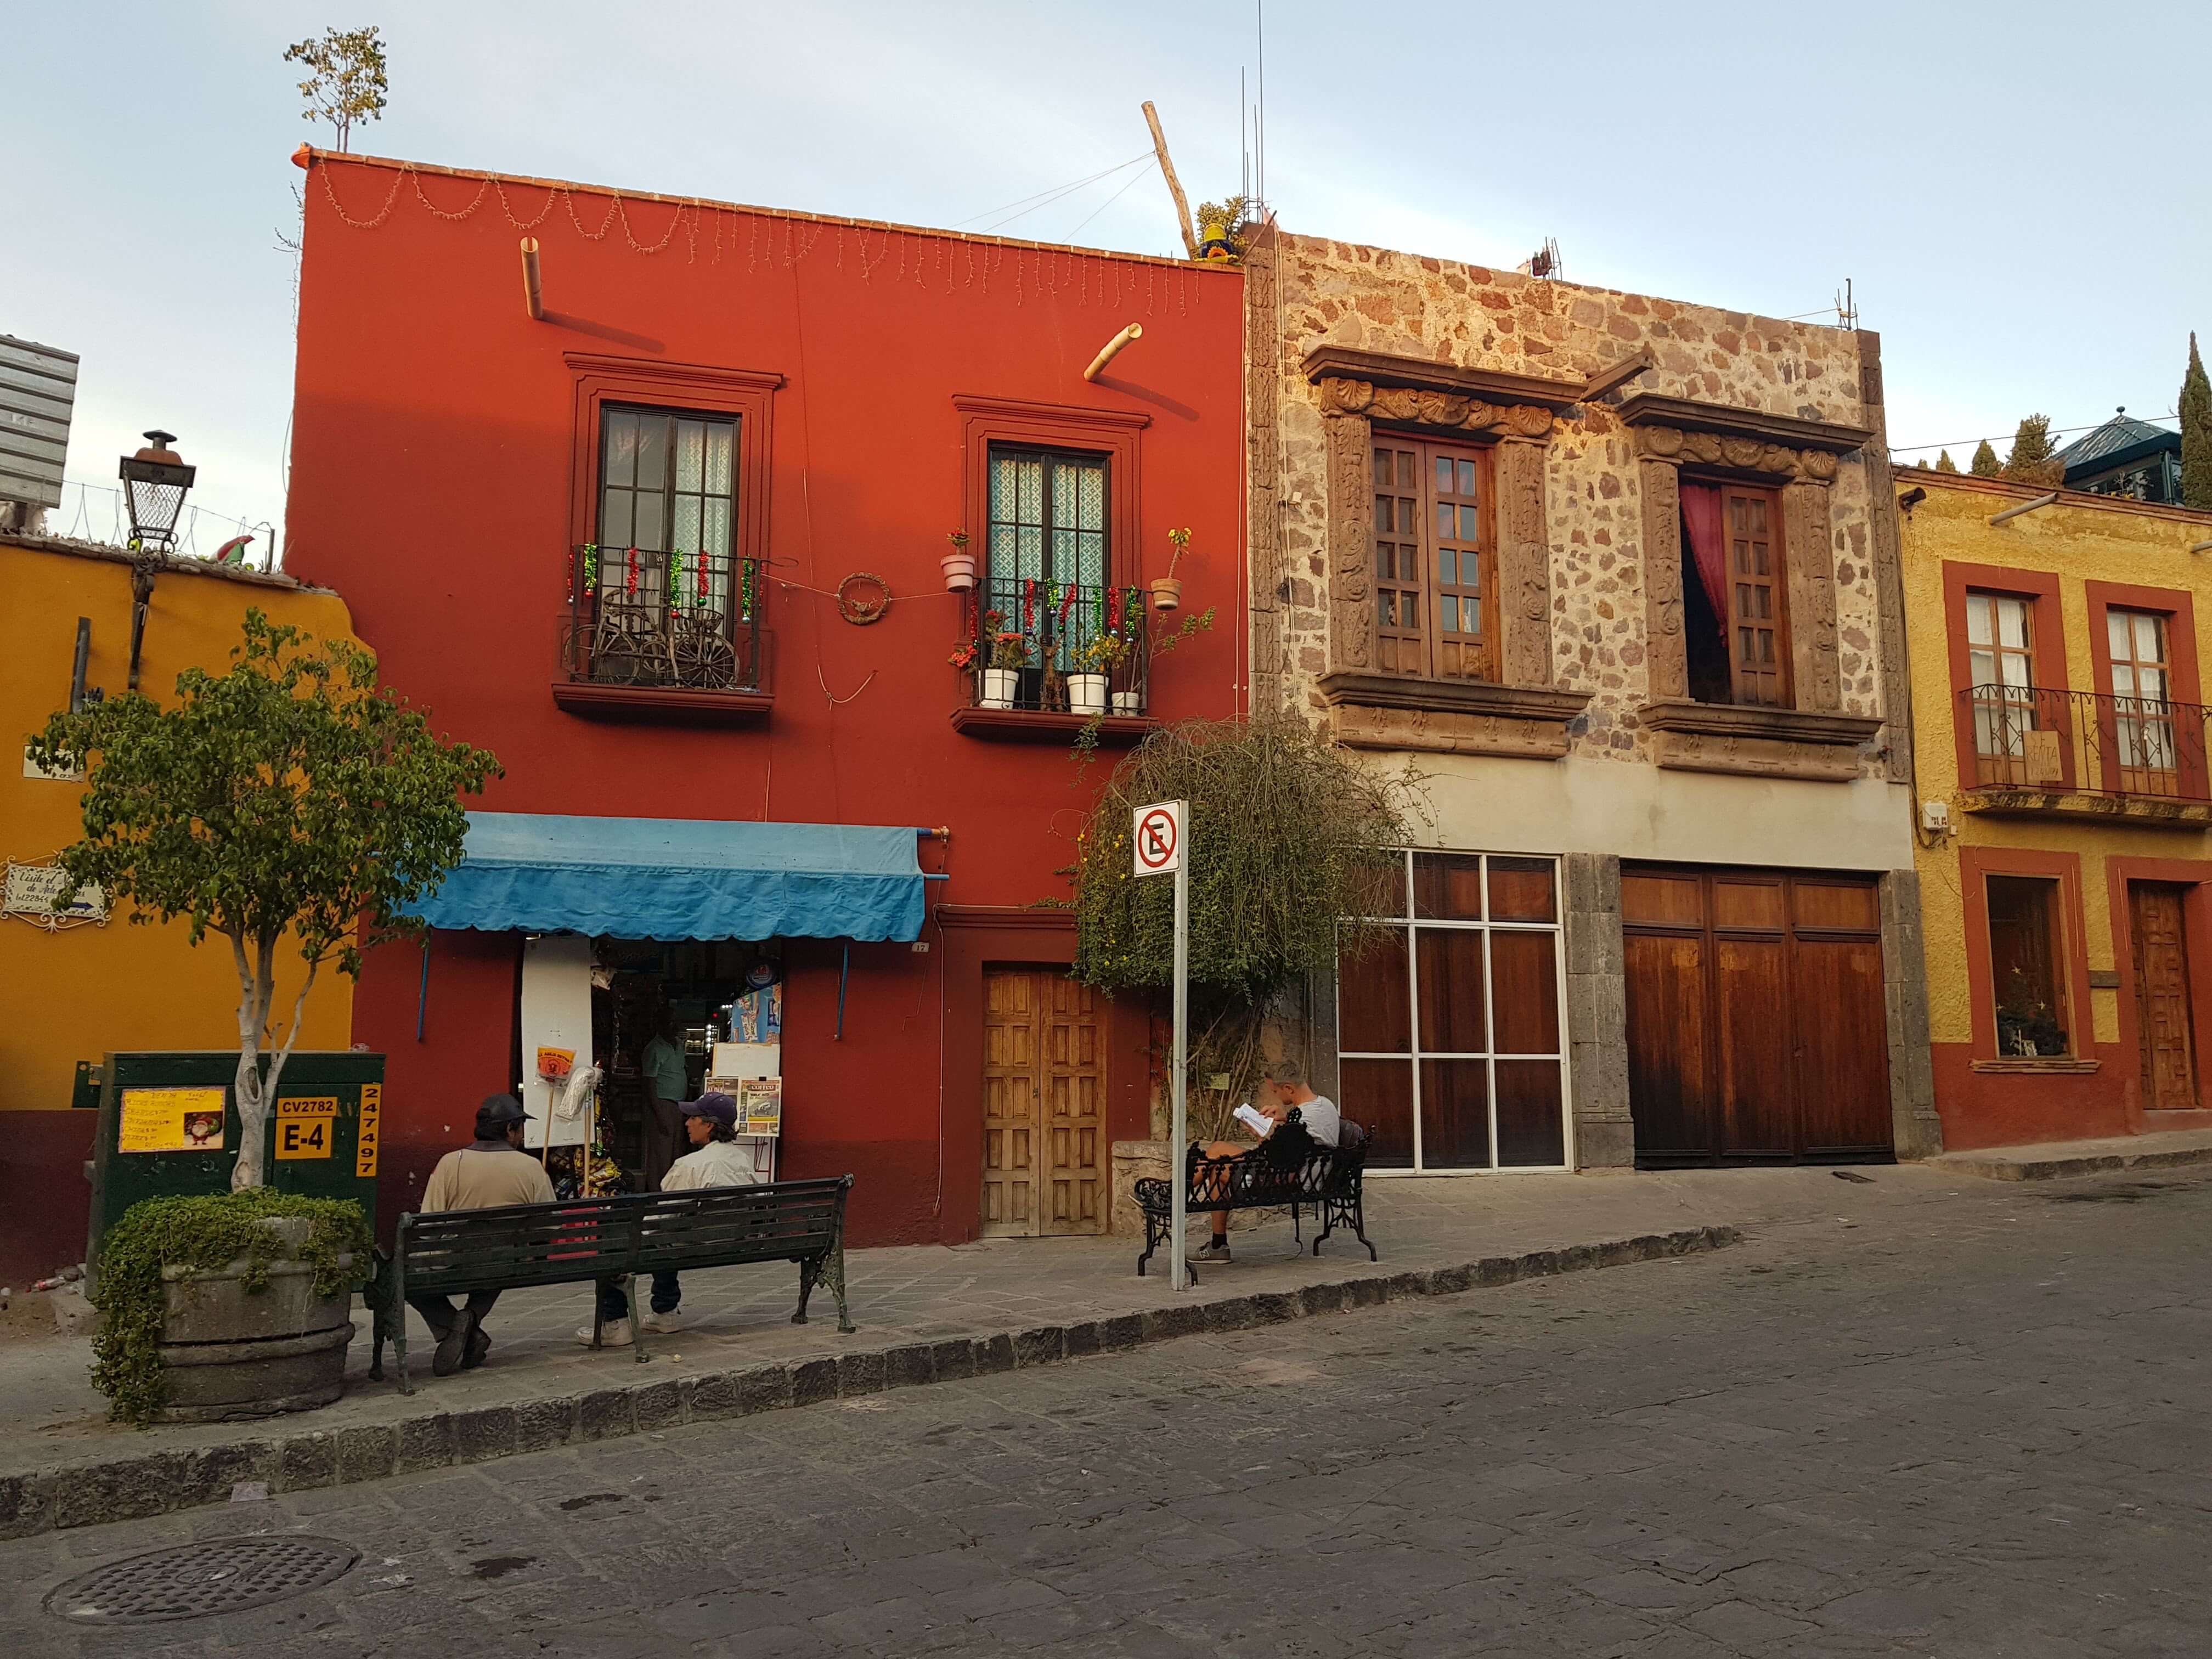 멕시코산미겔의 마을모습 빨간 하얀 노란 작은 2층짜리의 건물들이 늘어서 아기자기한 마을의 모습 벤치에 사람들이 여유를 부리고 있는 모습